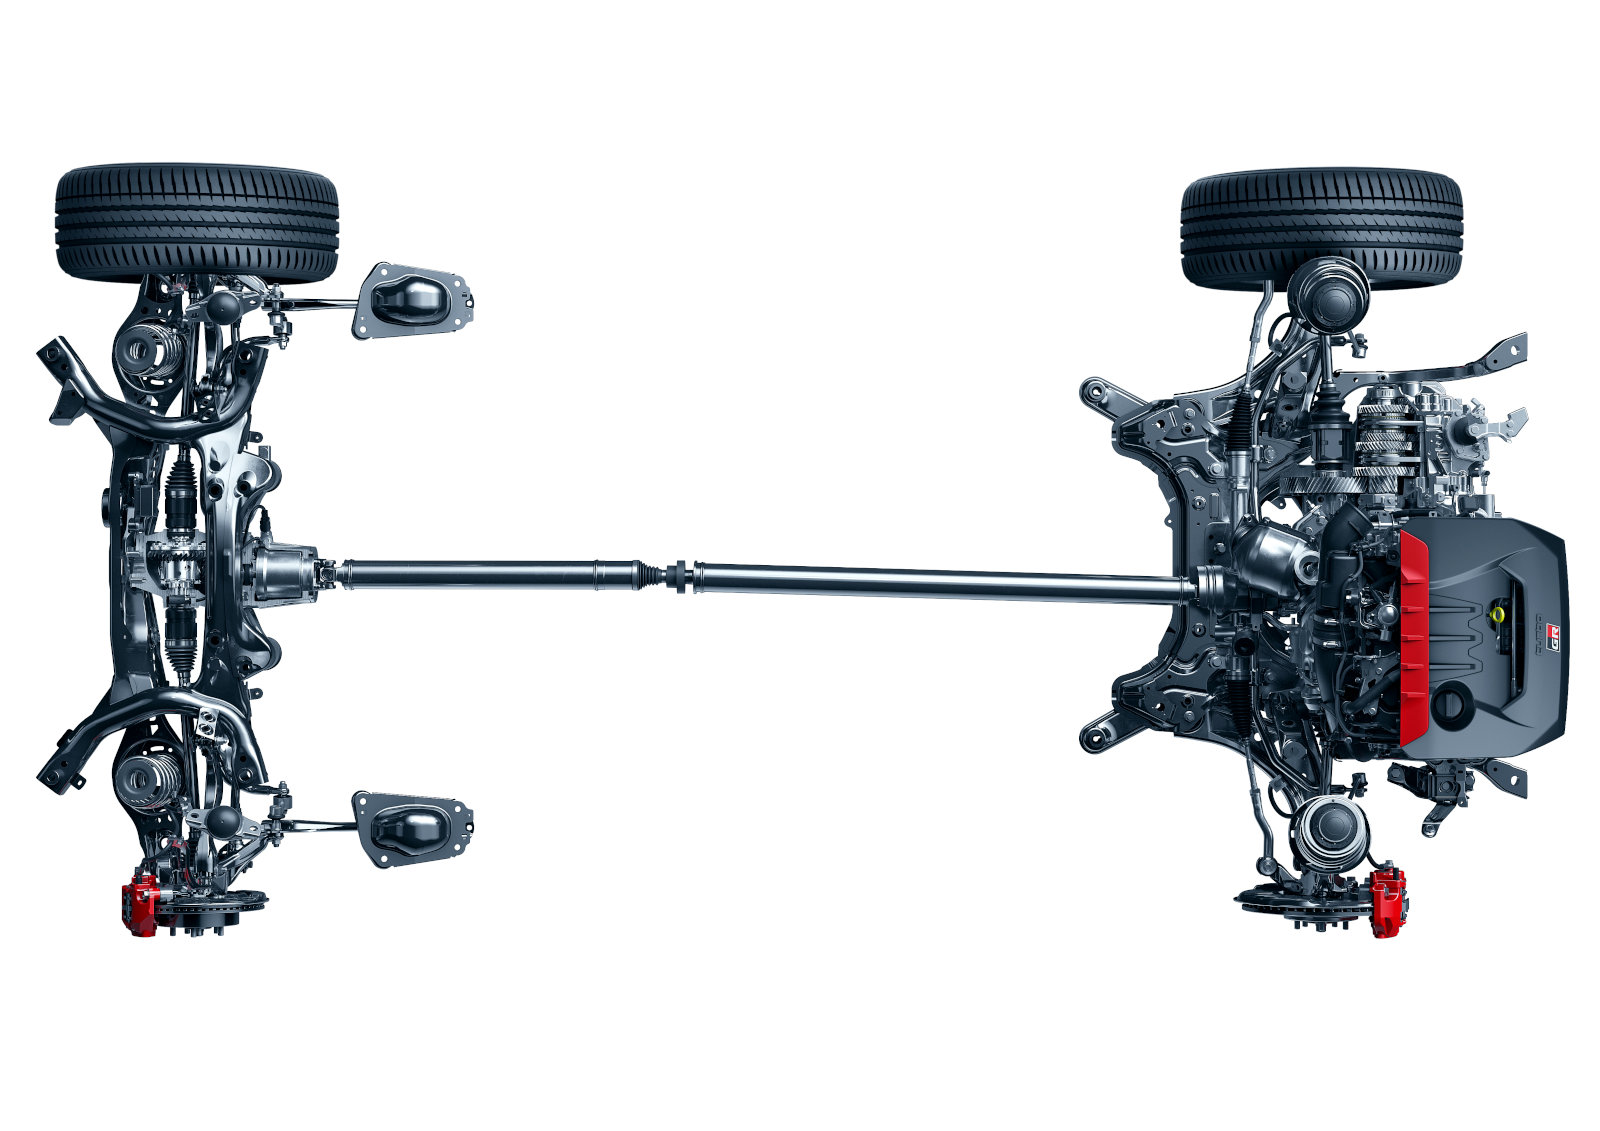 Toyota GR Yaris - moteur, boîte de vitesses, embrayage multidisque, différentiels, suspension - vue de dessus